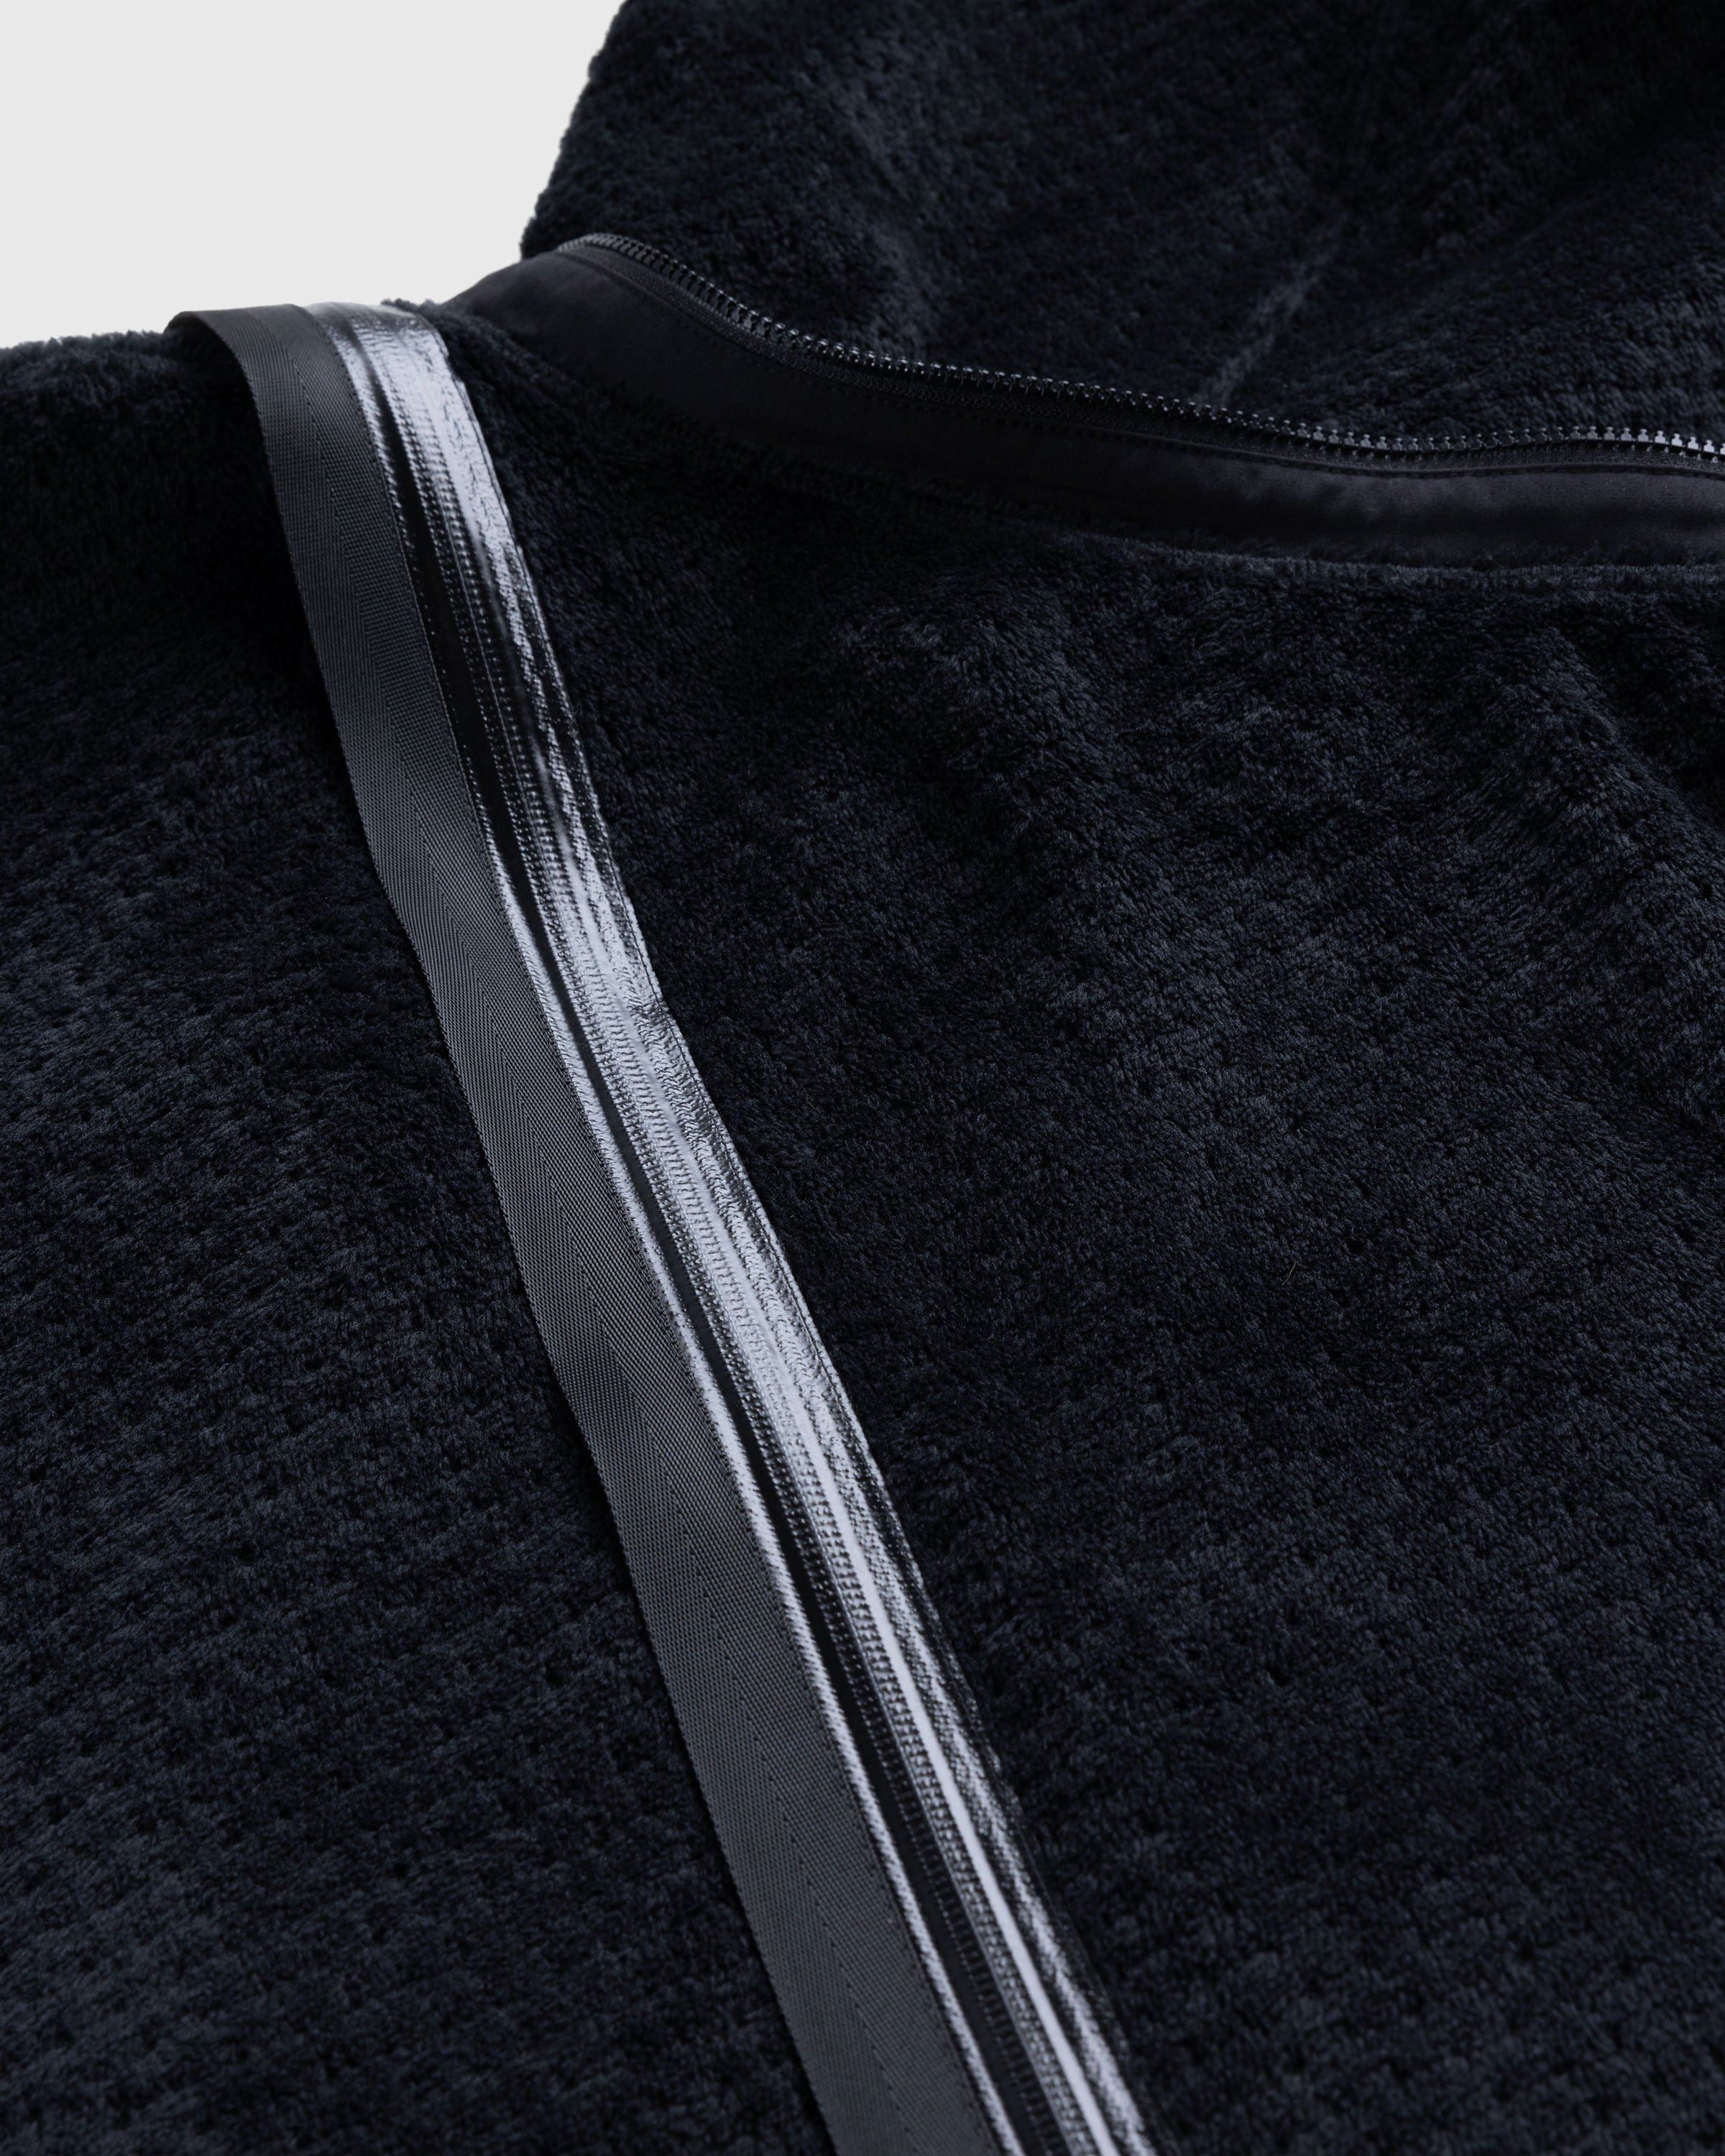 ACRONYM - J117-HL Jacket Black - Clothing - Black - Image 6